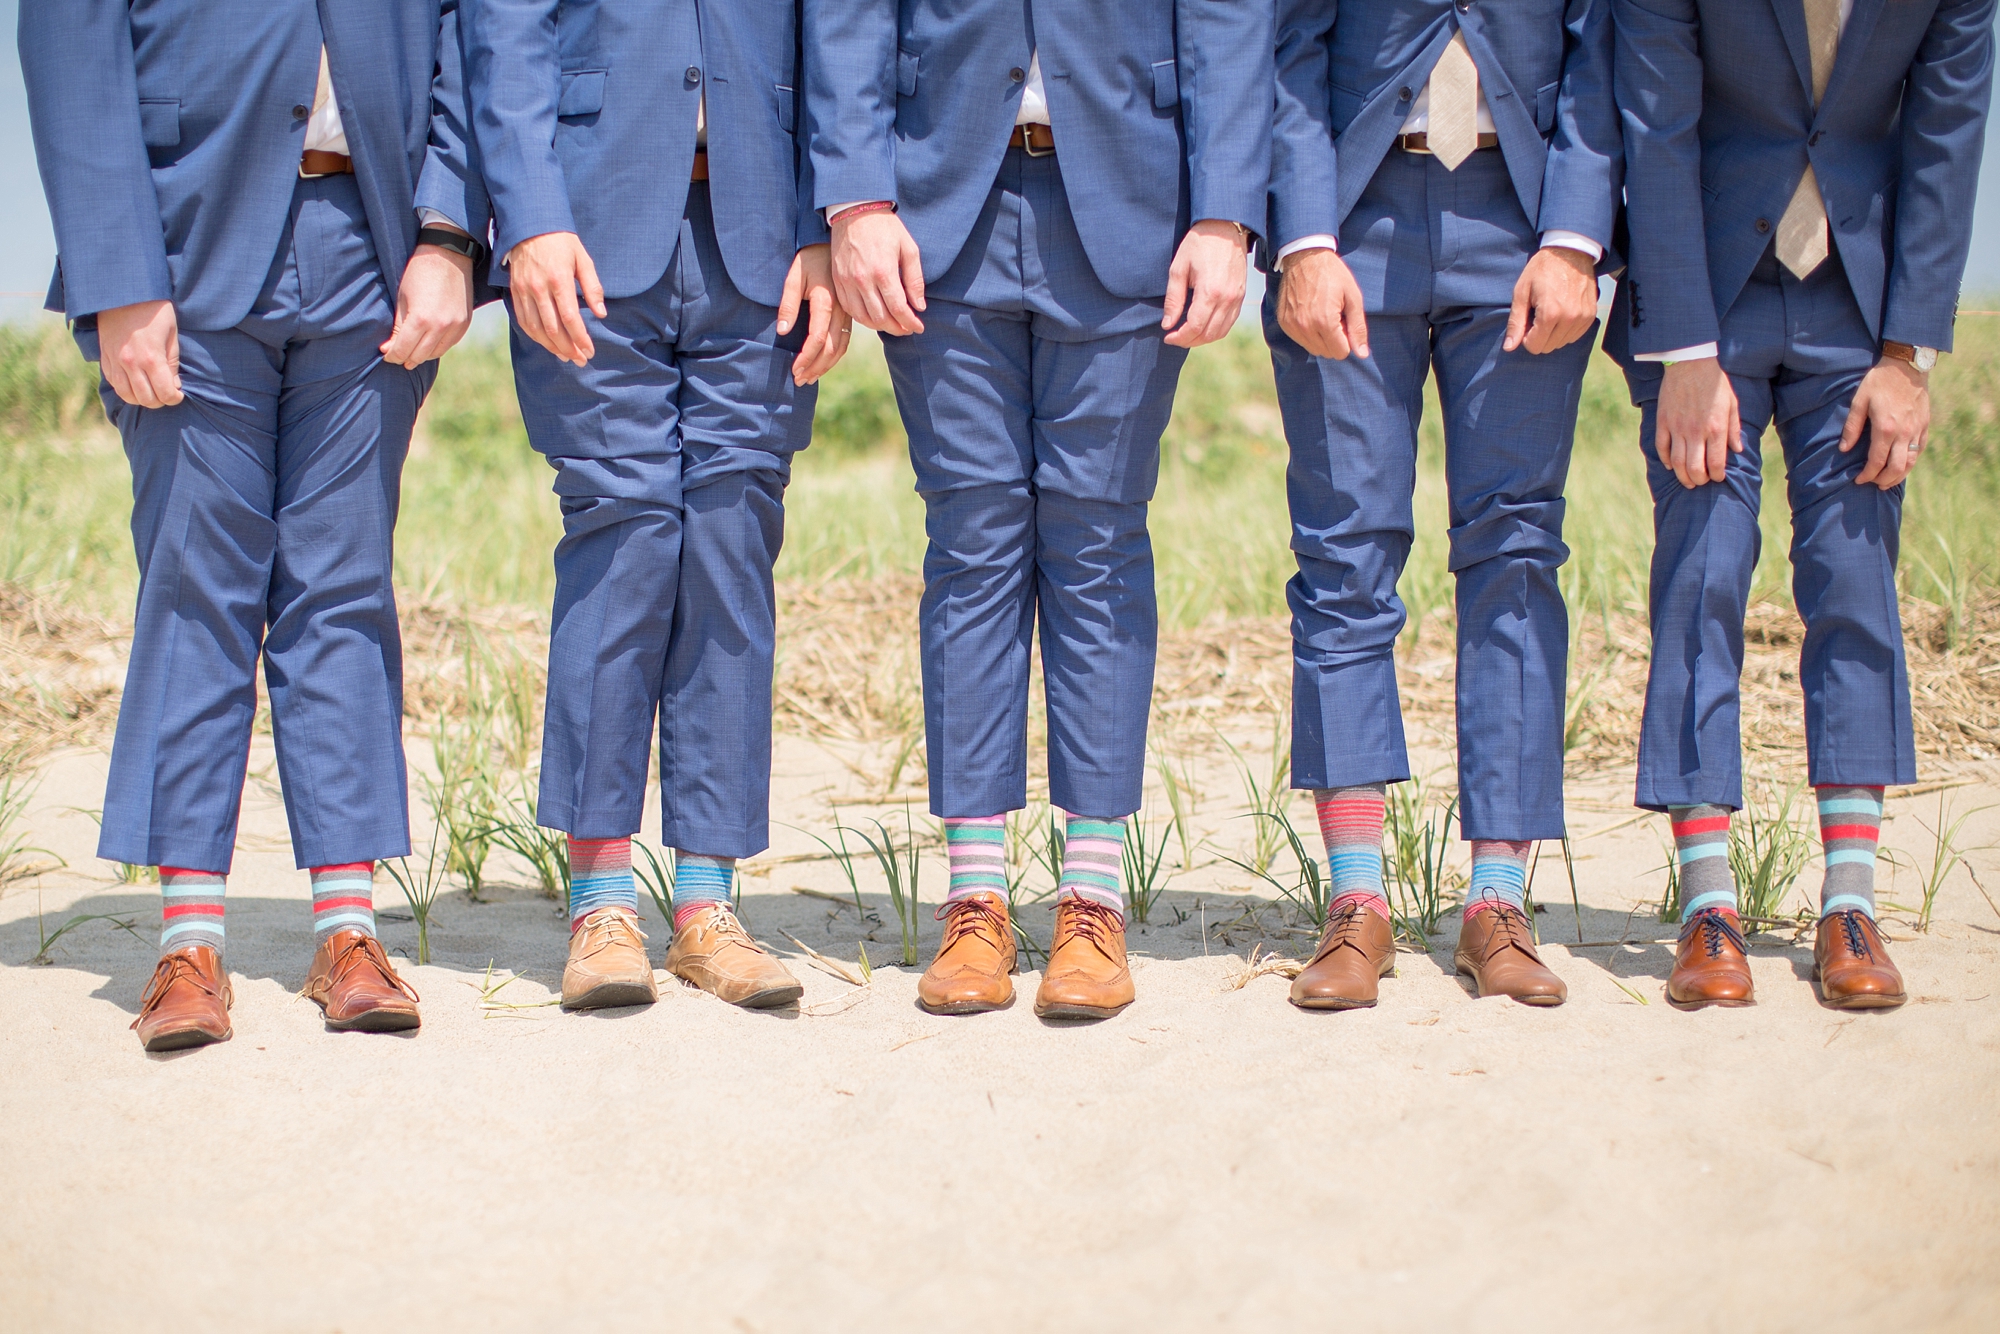  The groomsmen rocking the fun socks! 